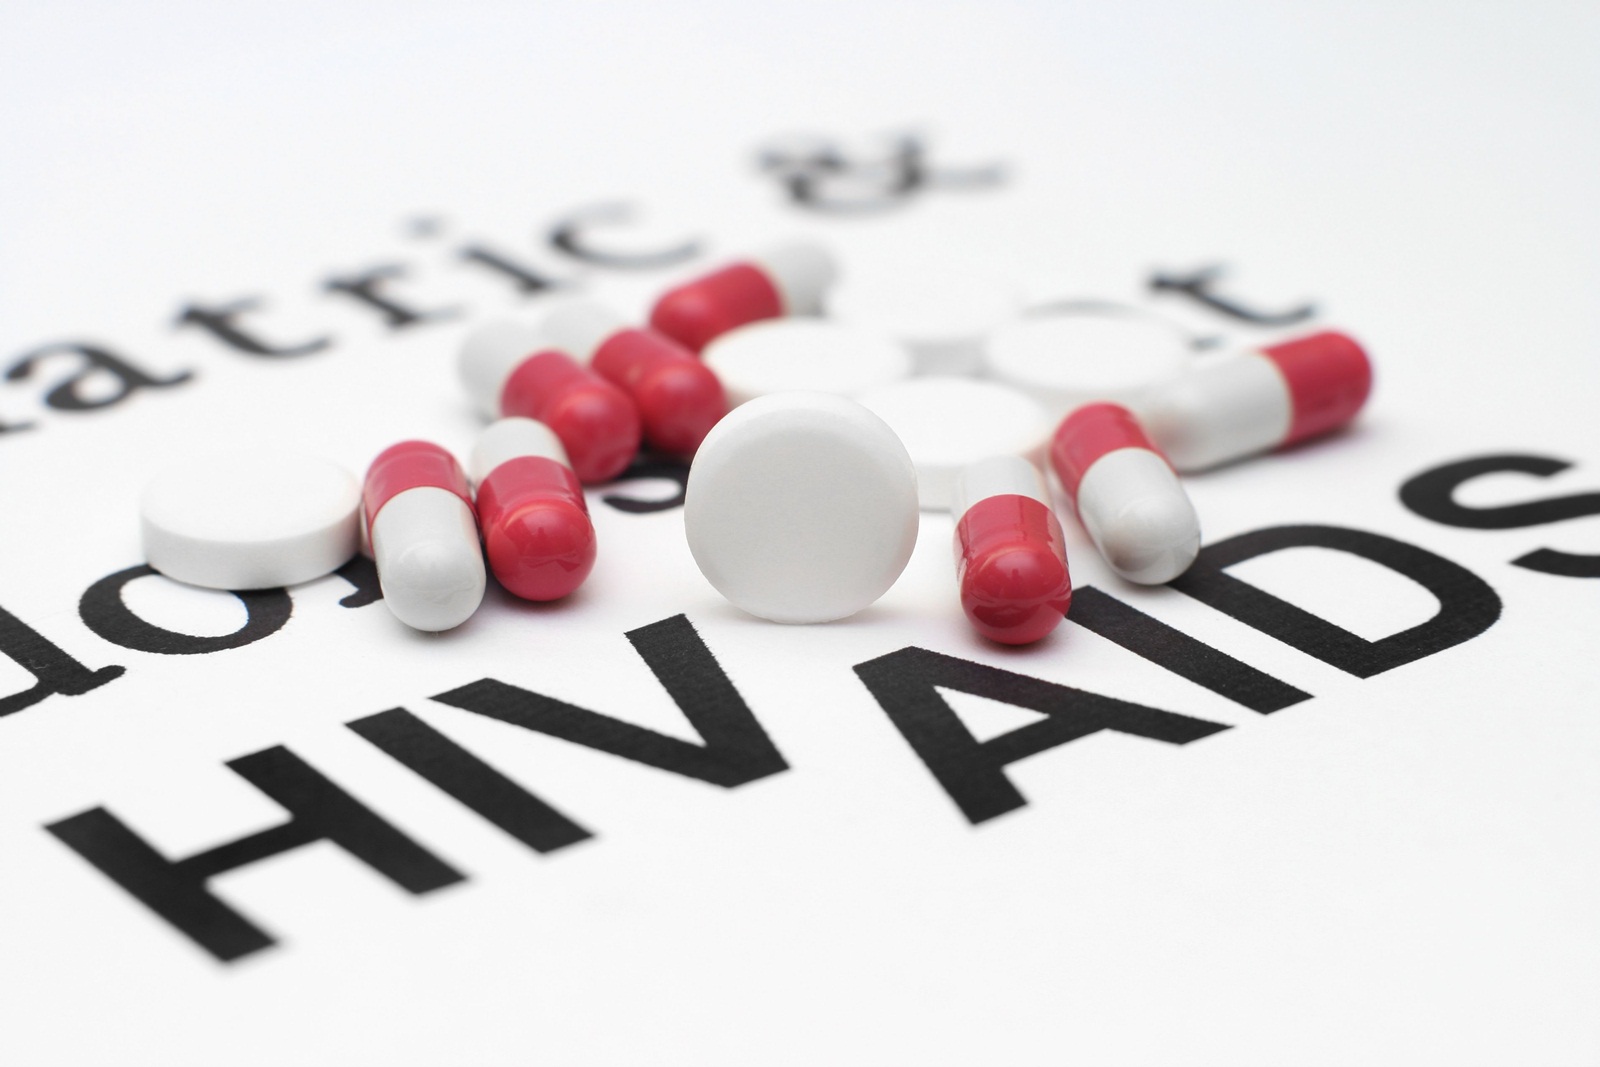 ผู้ที่มีพฤติกรรมเสี่ยง ตรวจหา HIV ฟรี thaihealth